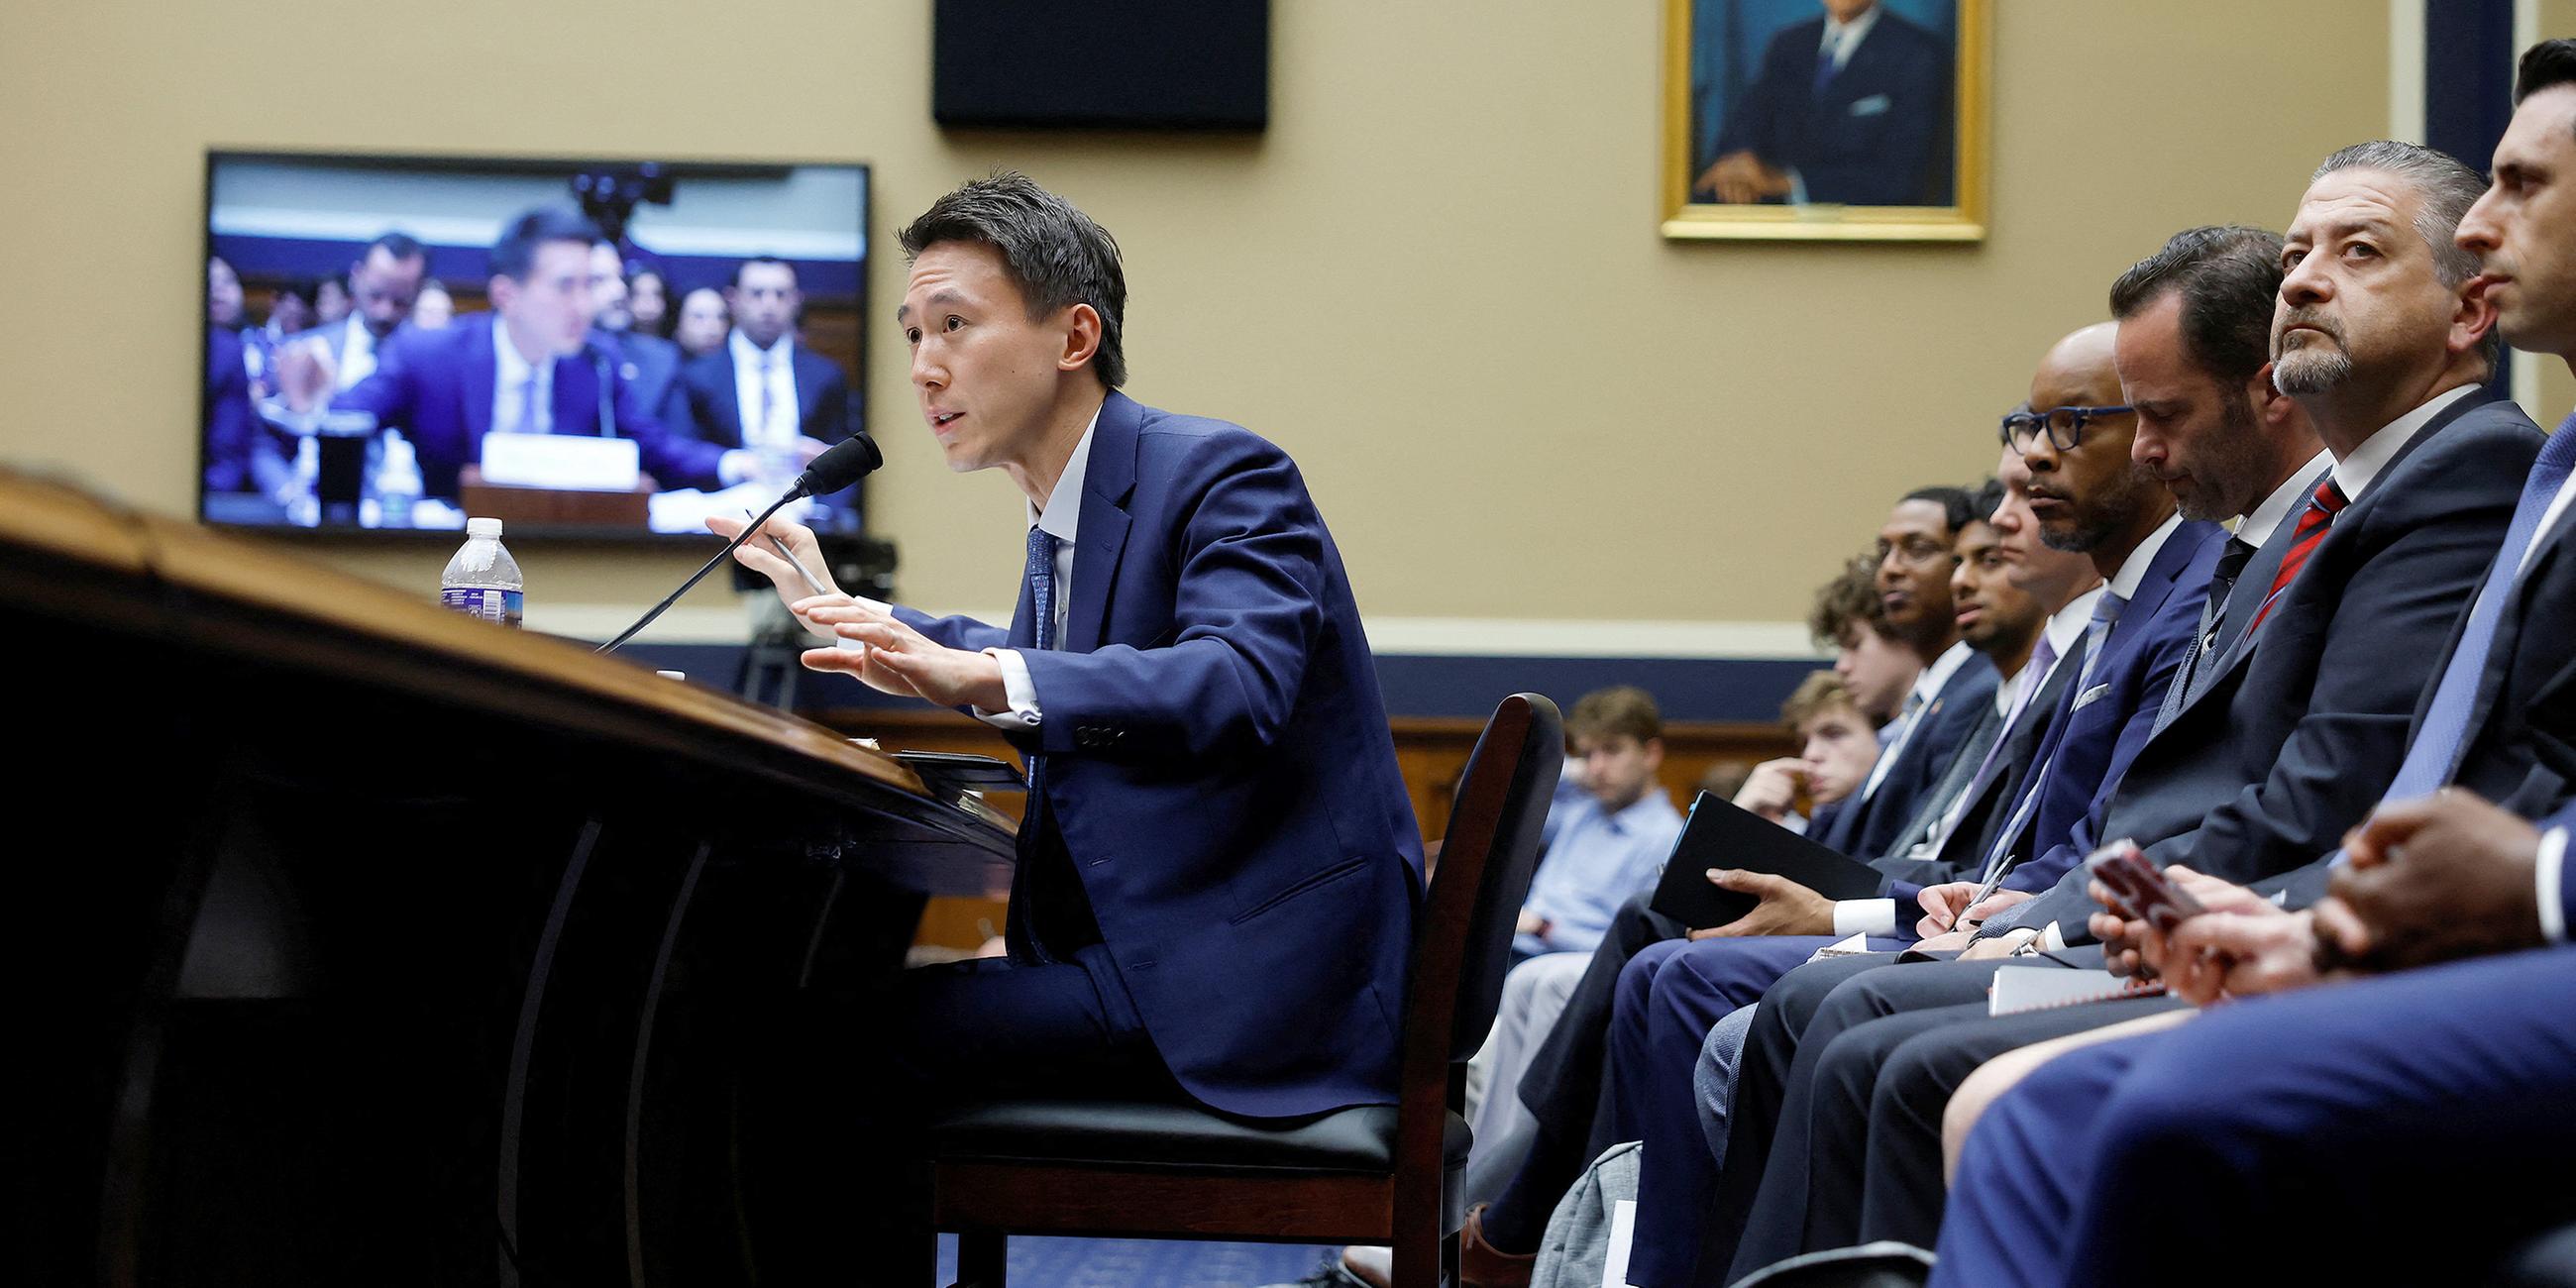 Shou Zi Chew bei der Anhörung zur App TikTok im US-Kongress